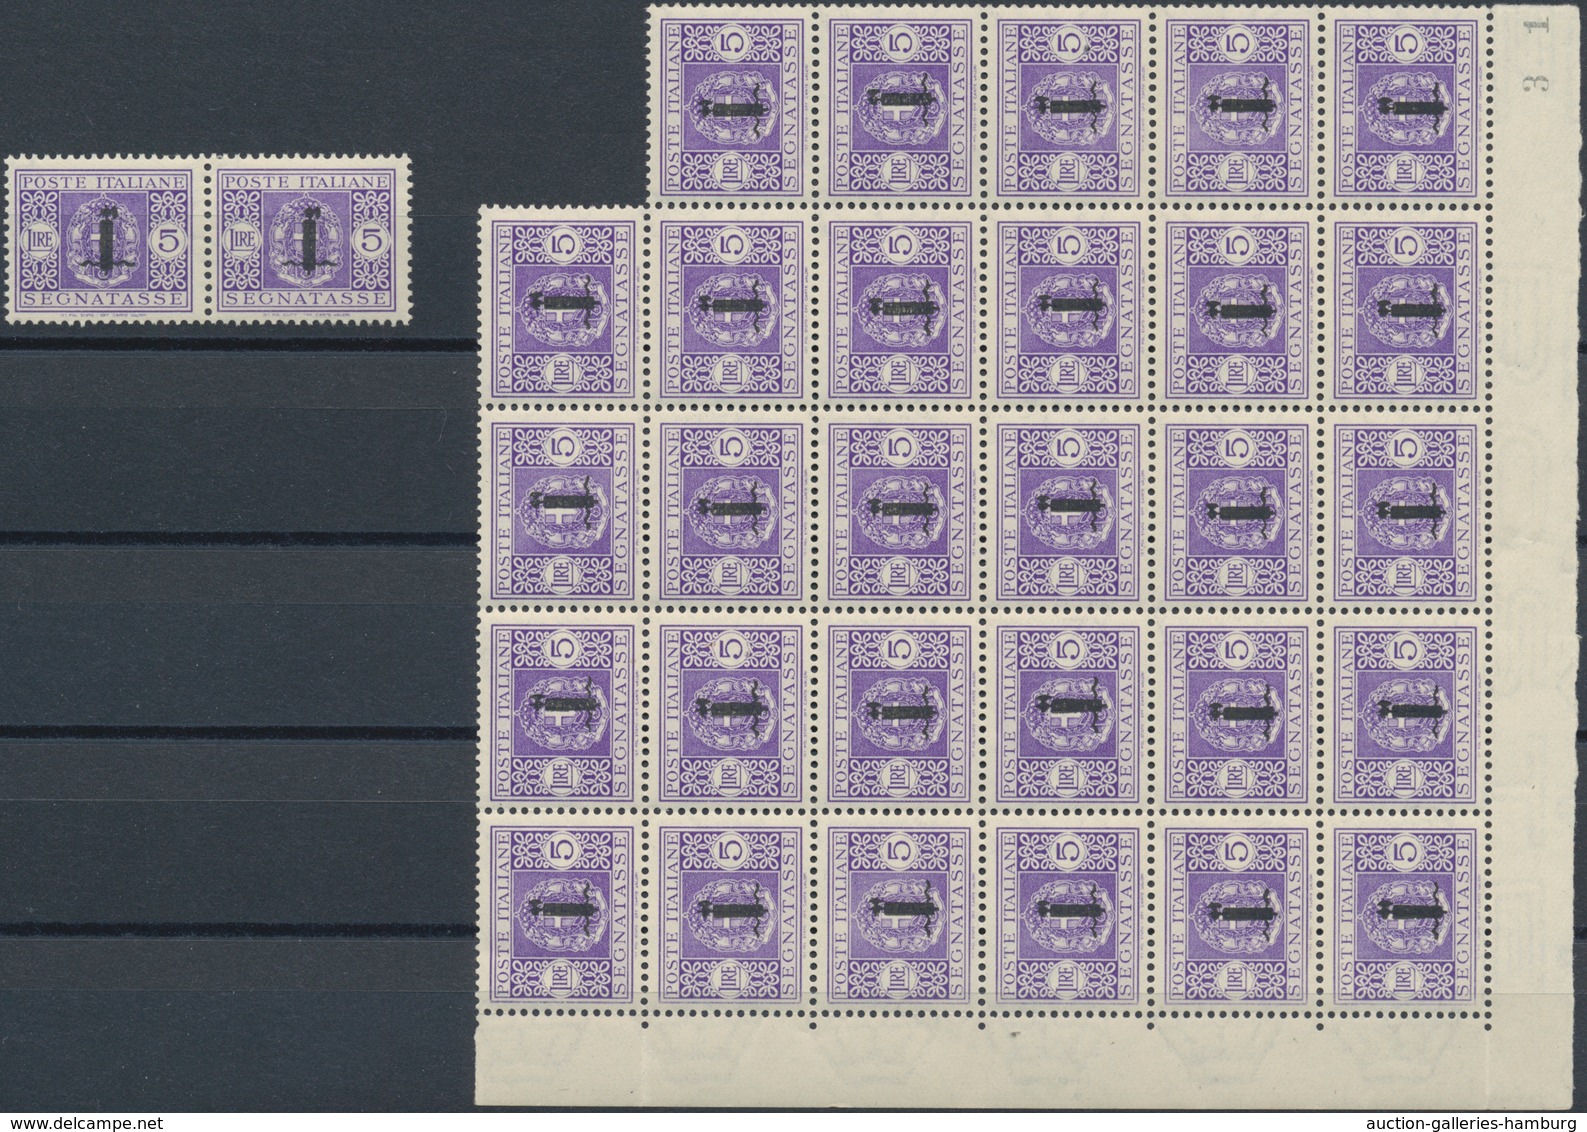 Italien: 1944, Republika Sociale "G.N.R." Issue 5 Lire Violet 31 Stamps Mint Never Hinged Large Bloc - Non Classés